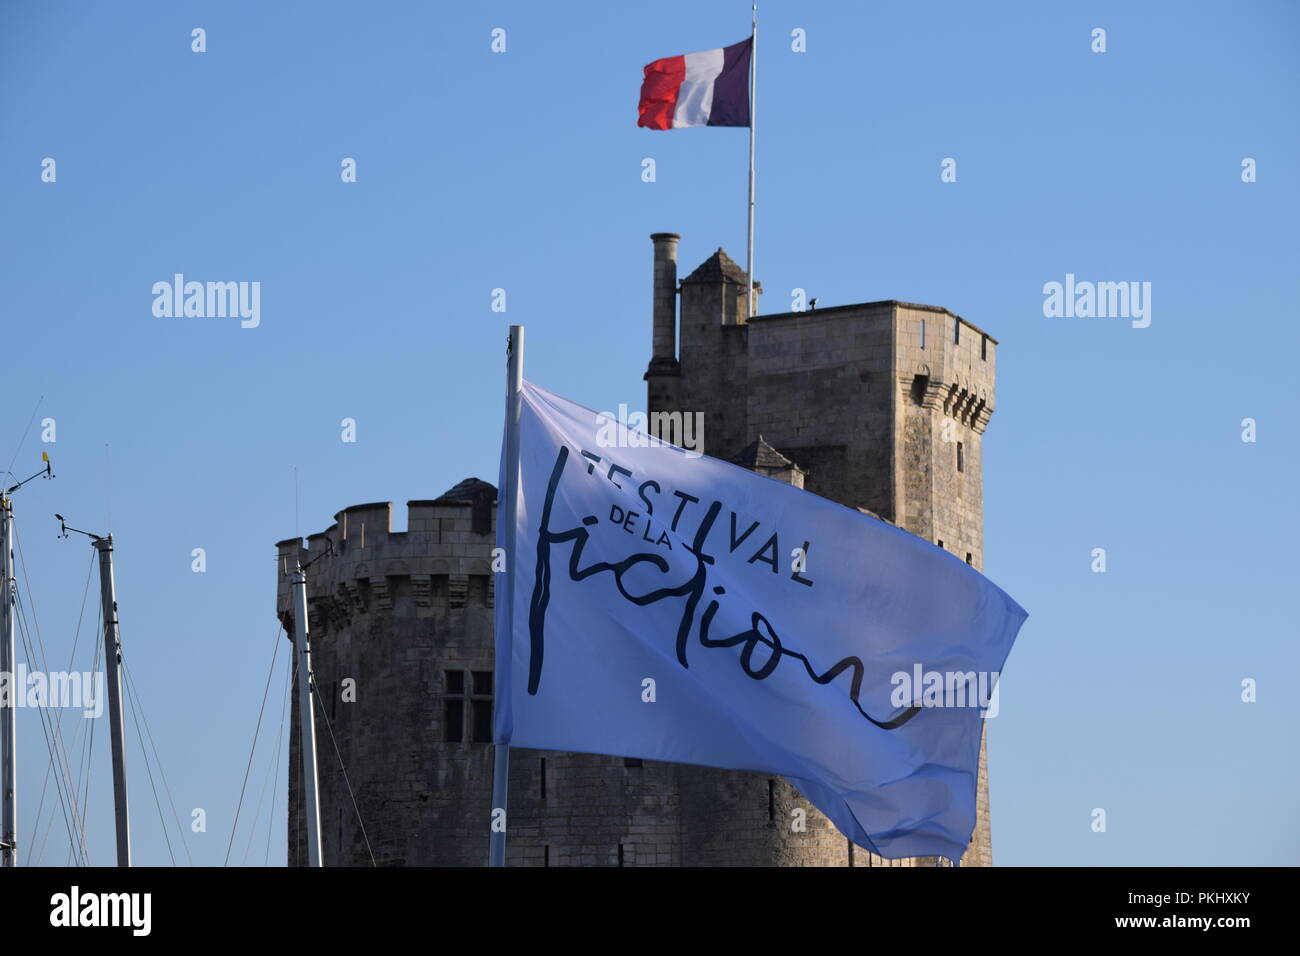 Festival de la fiction de La Rochelle, France, est un concours destiné à initier les professionnels et le public à la nouvelle télévision creations de la saison. Banque D'Images